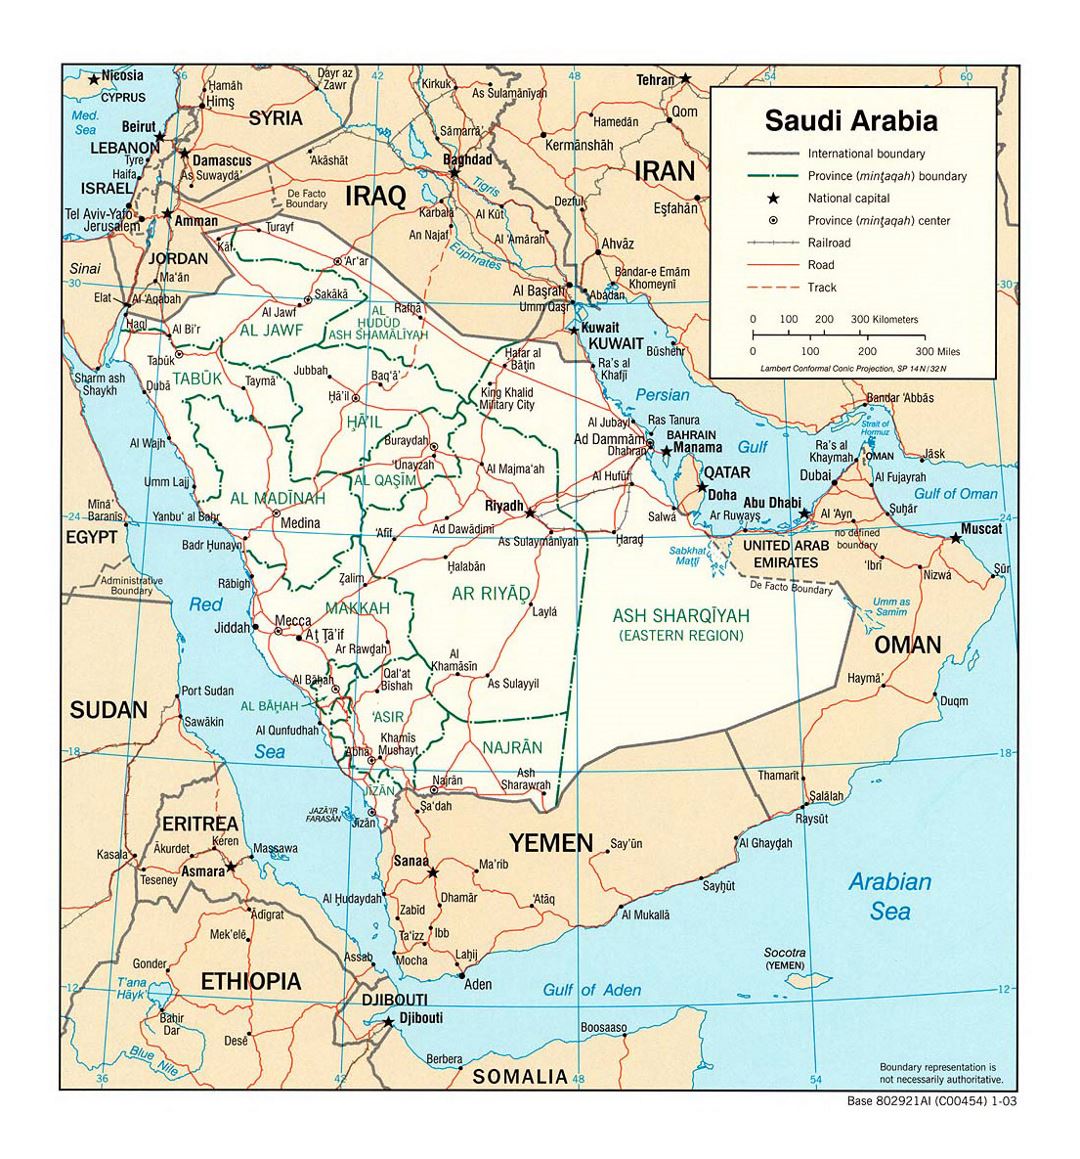 Детальная политическая и административная карта Саудовской Аравии с дорогами, железными дорогами и крупными городами - 2003